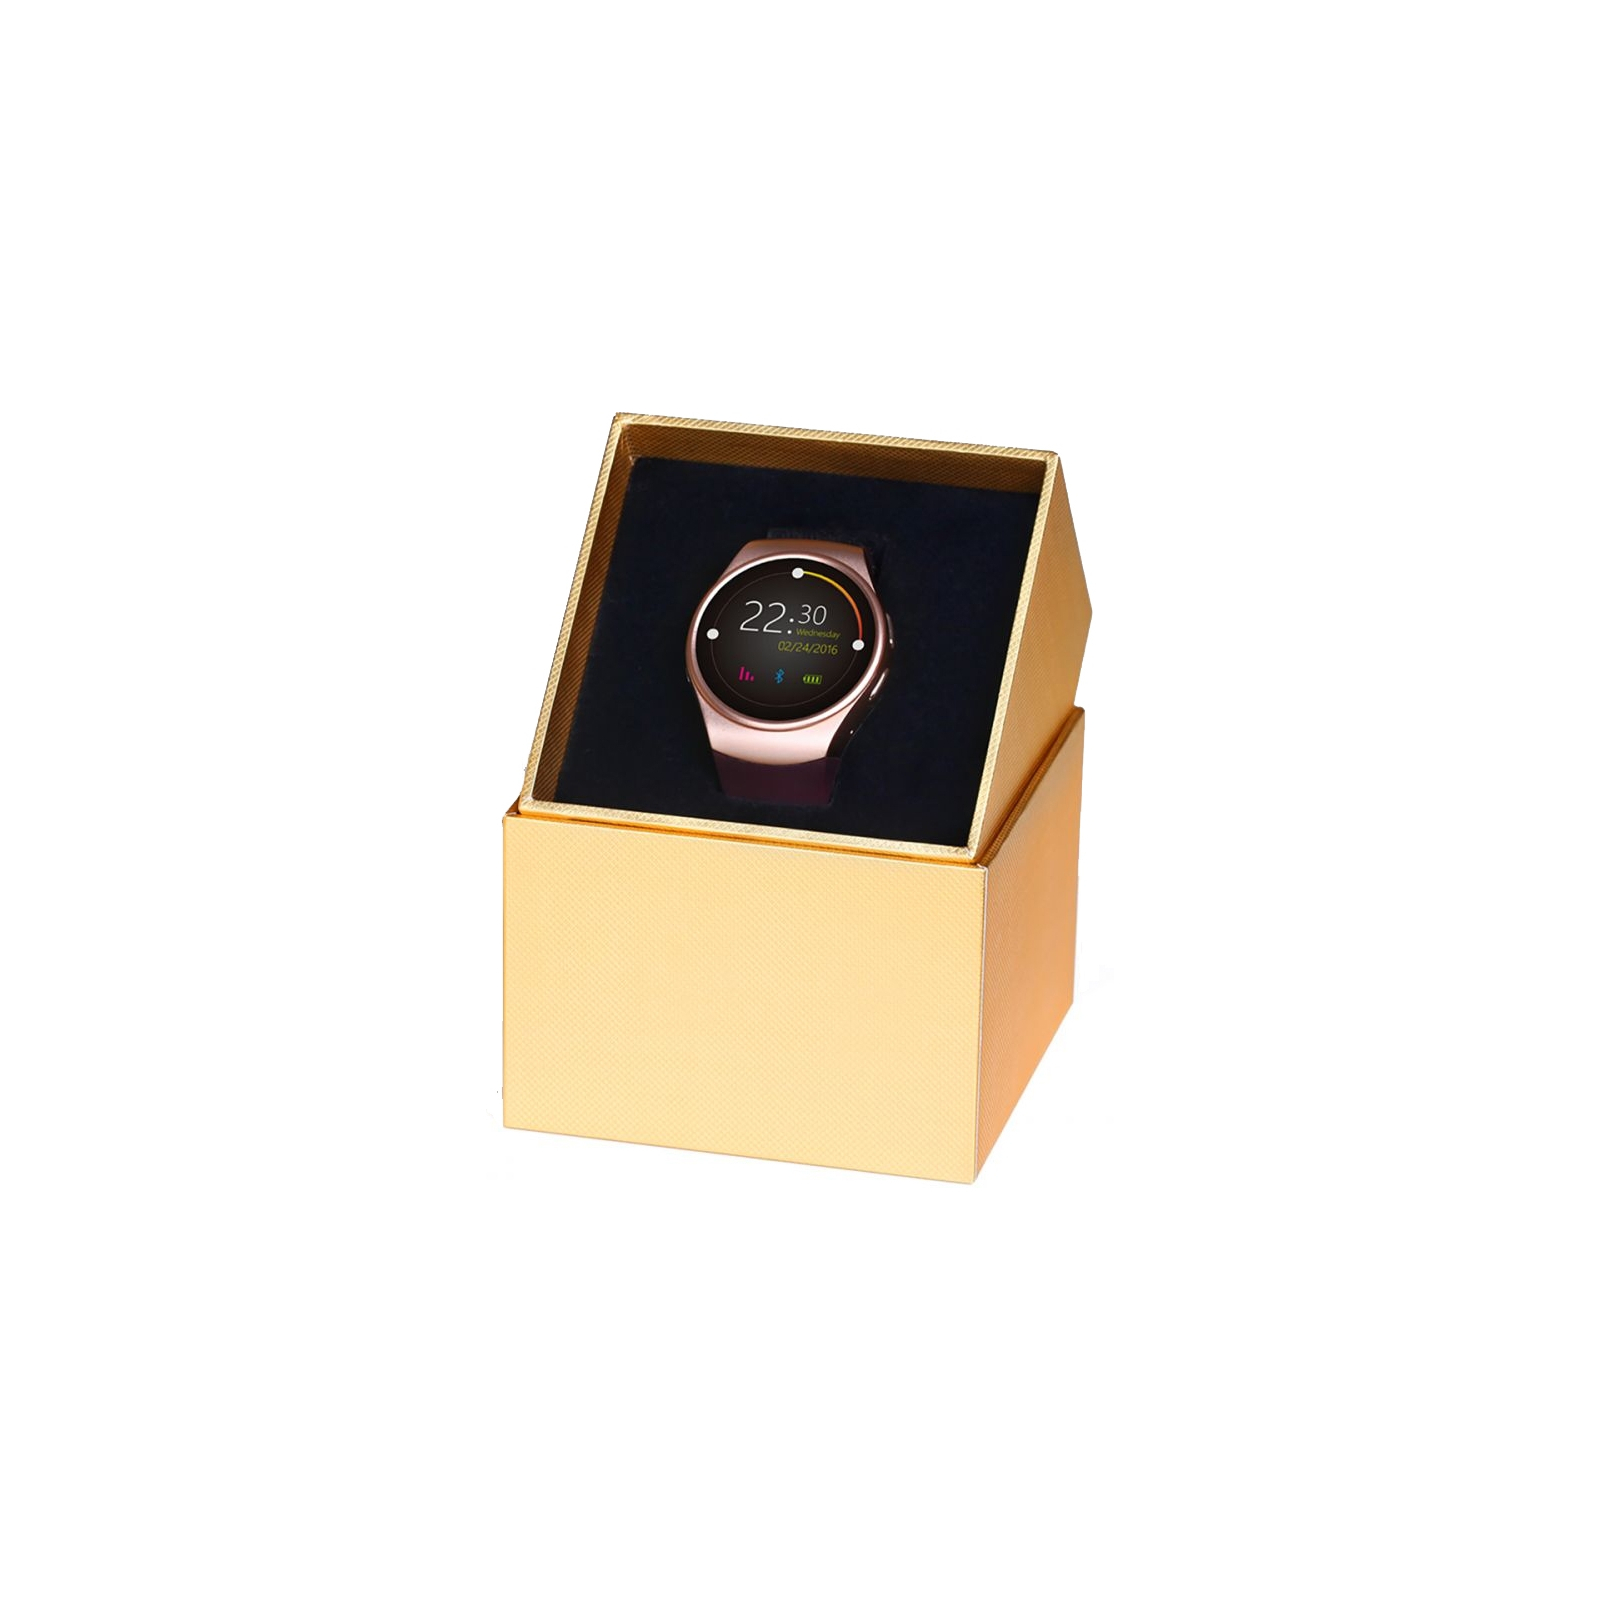 Смарт-часы King Wear KW18 Gold (F_52949) изображение 6